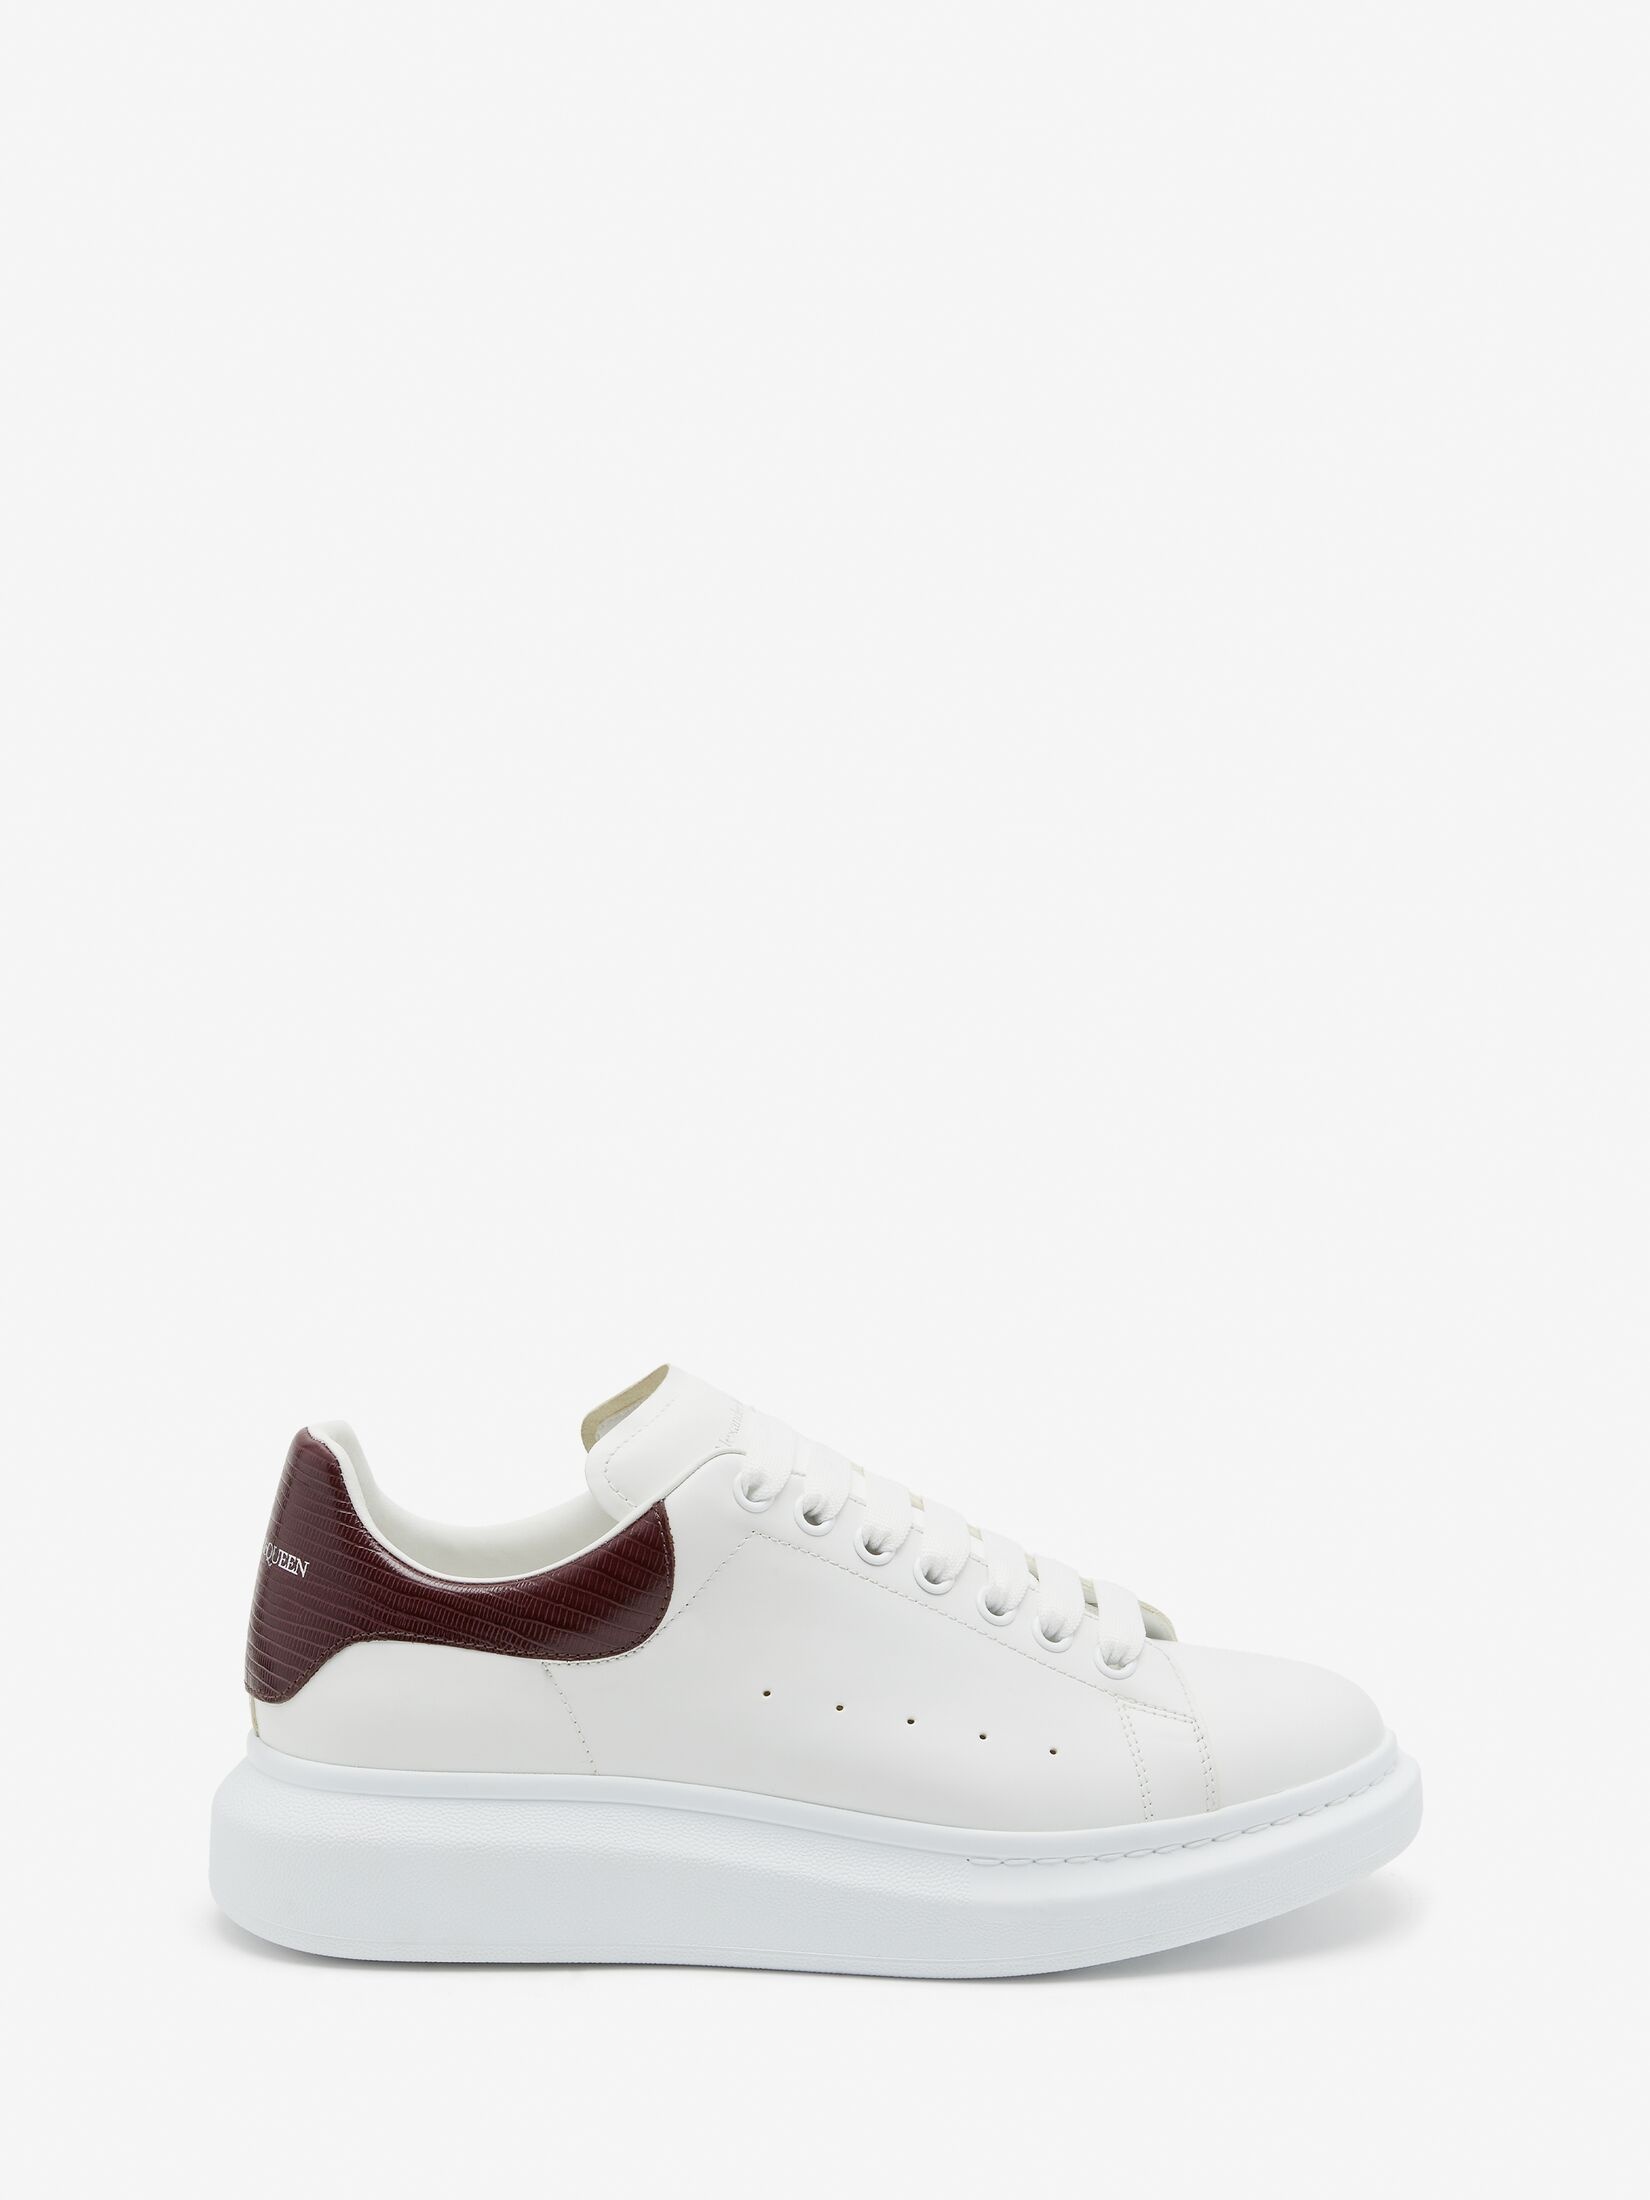 Men's Oversized Sneaker in White/burgundy - 1